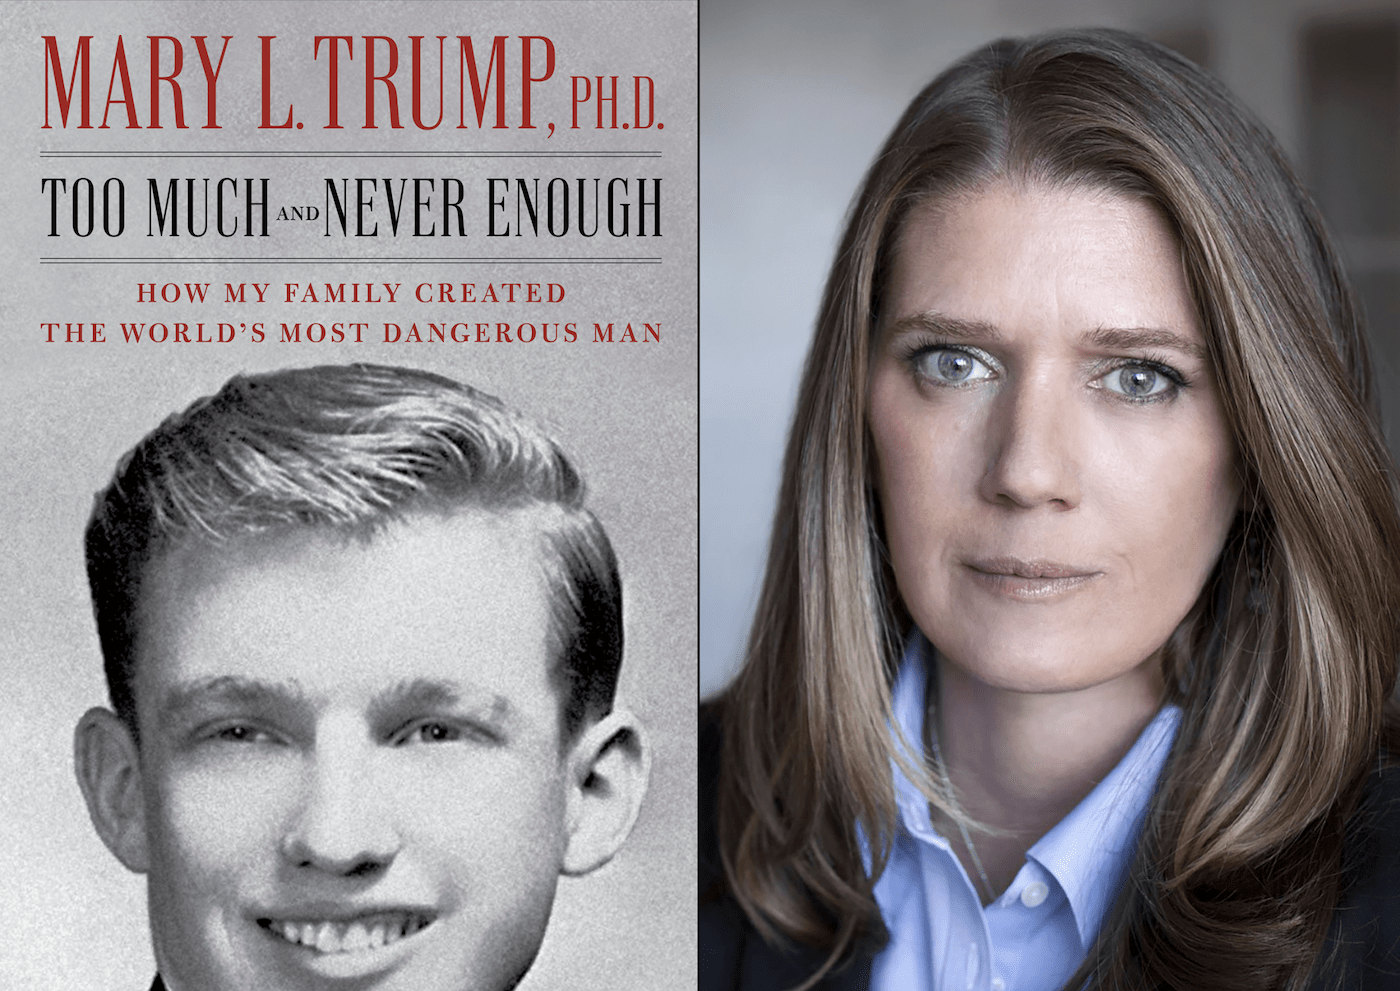 Sobrina de Trump lo describe en su libro como un narcicista mentiroso con un padre “sociópata”